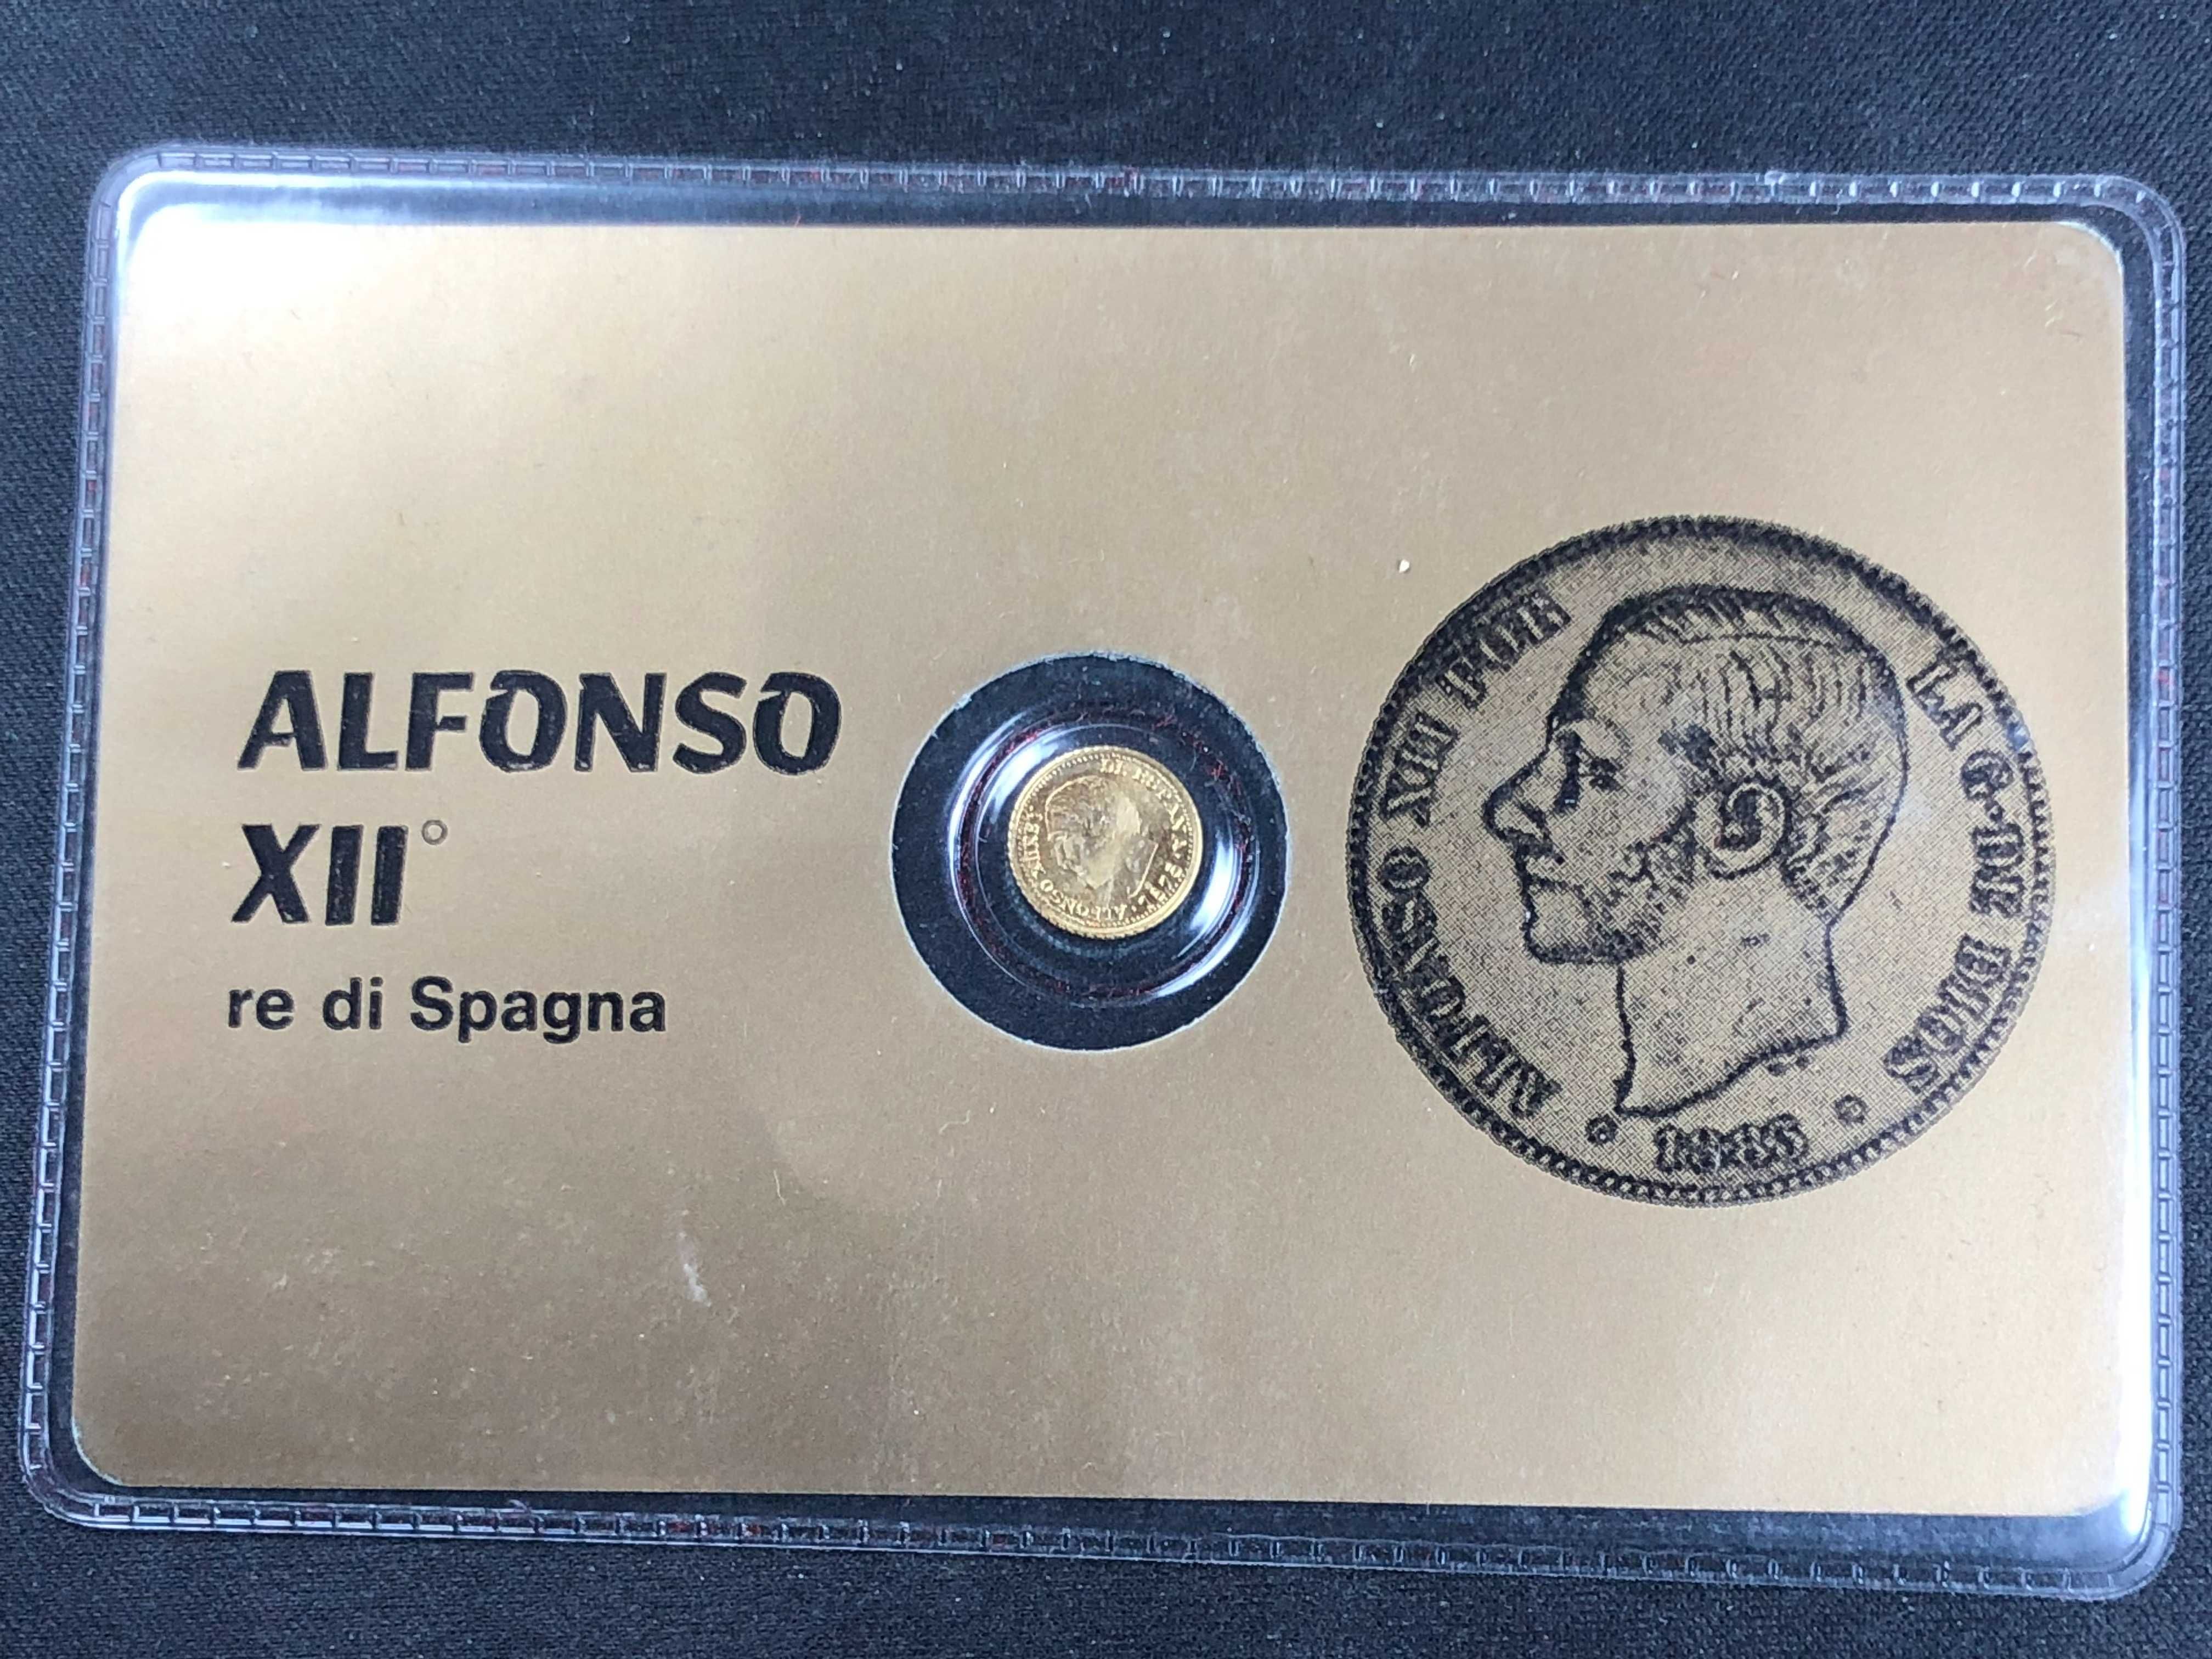 Carteira selada Miniatura 5 pesetas banhada a ouro do Rei Alfonso XII